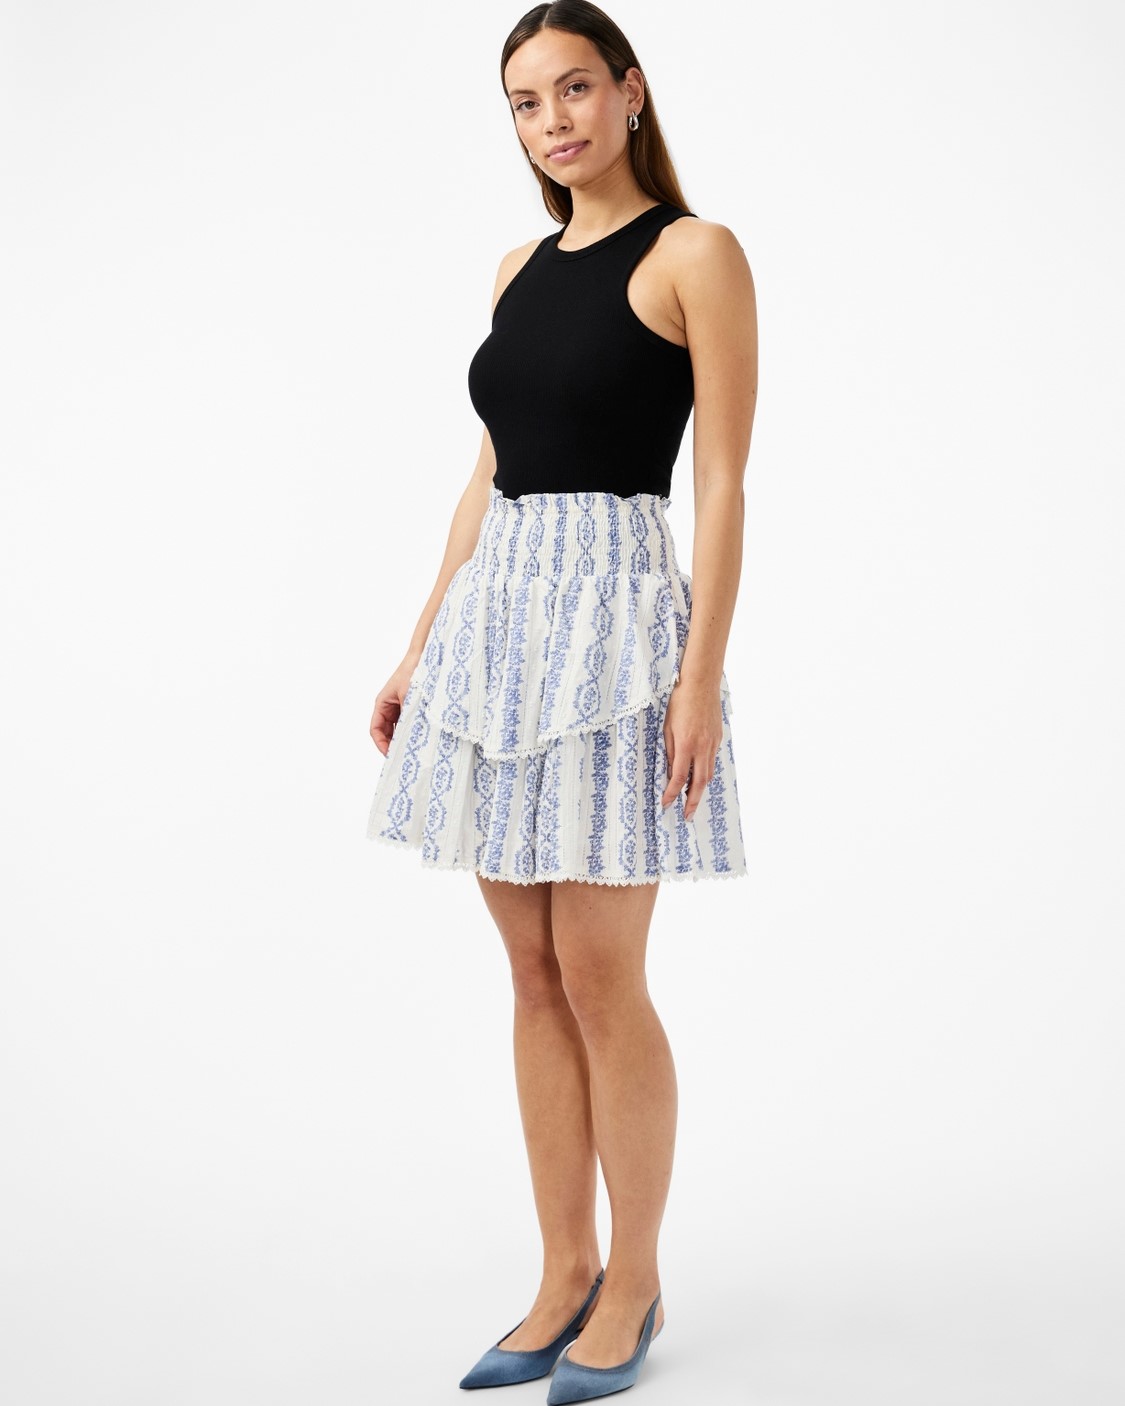 Yastovina Skirt Blue/White - Yas